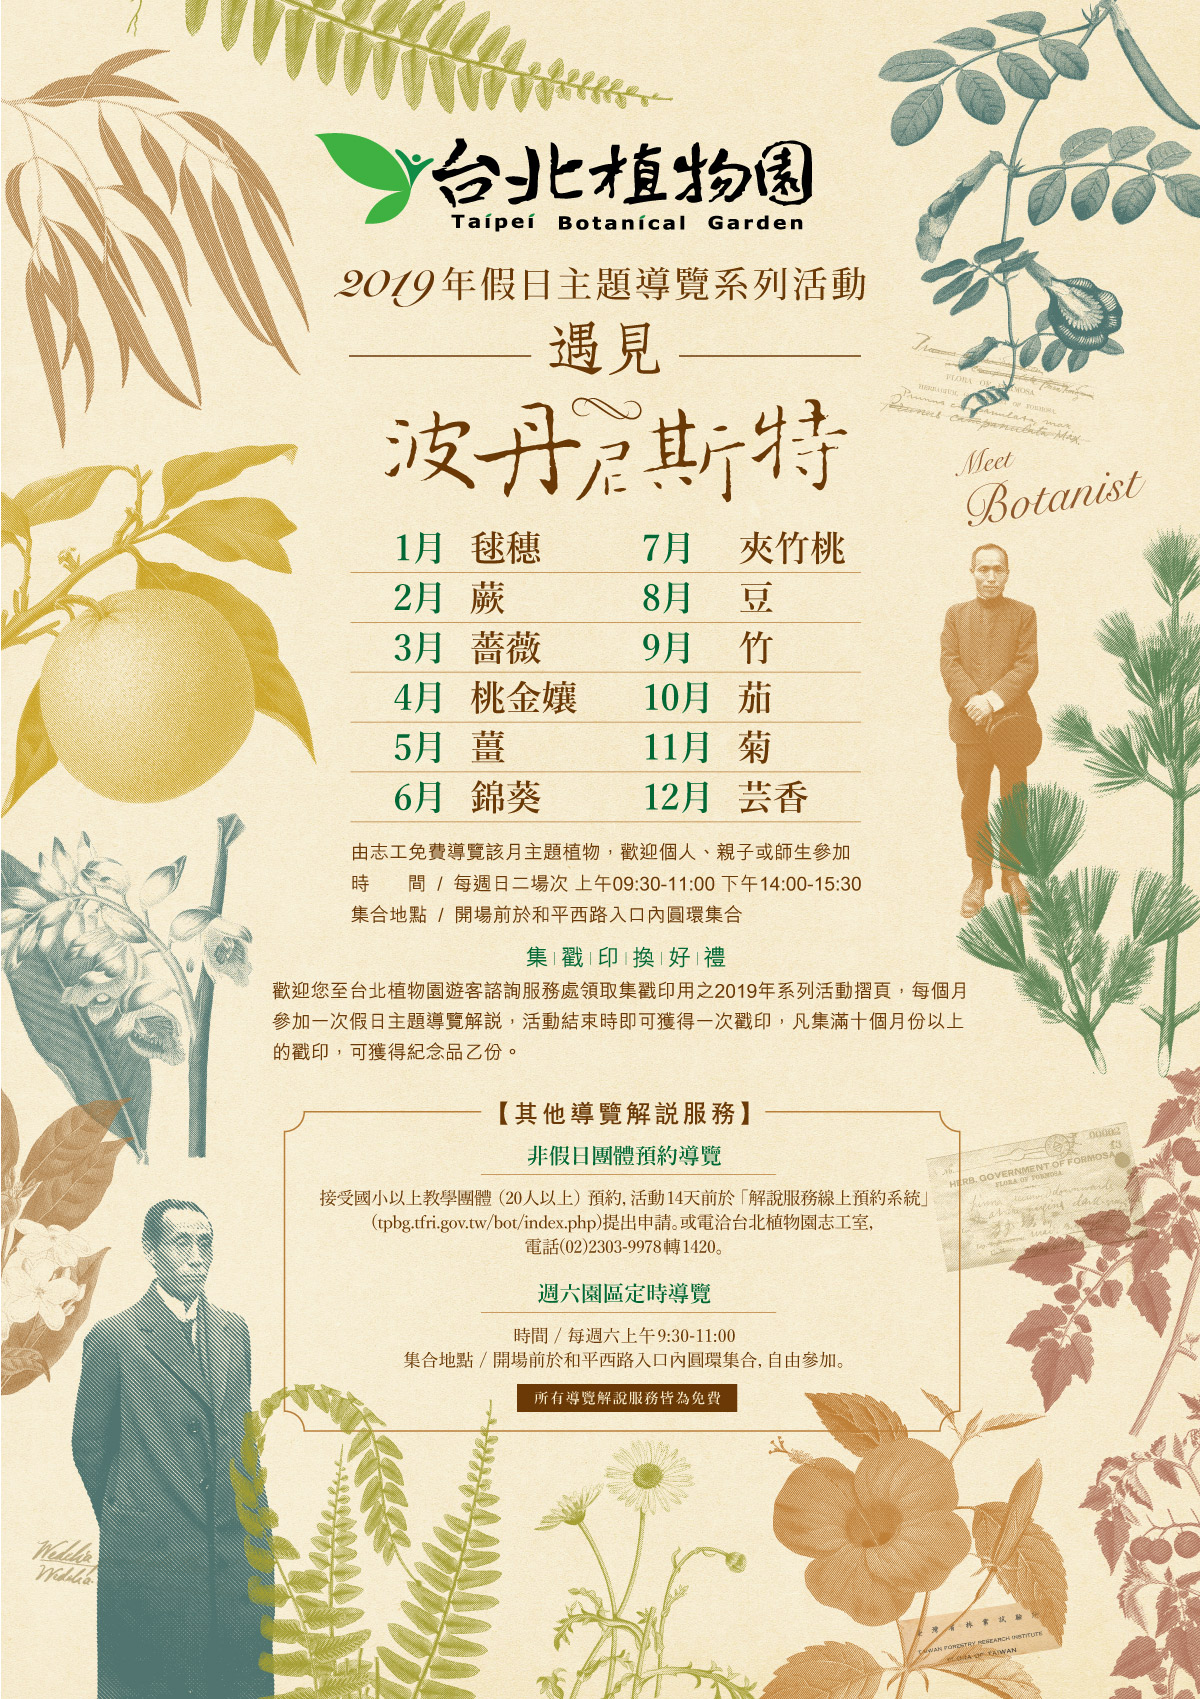 台北植物園19 假日主題導覽系列活動 遇見波丹尼斯特 環境資訊中心